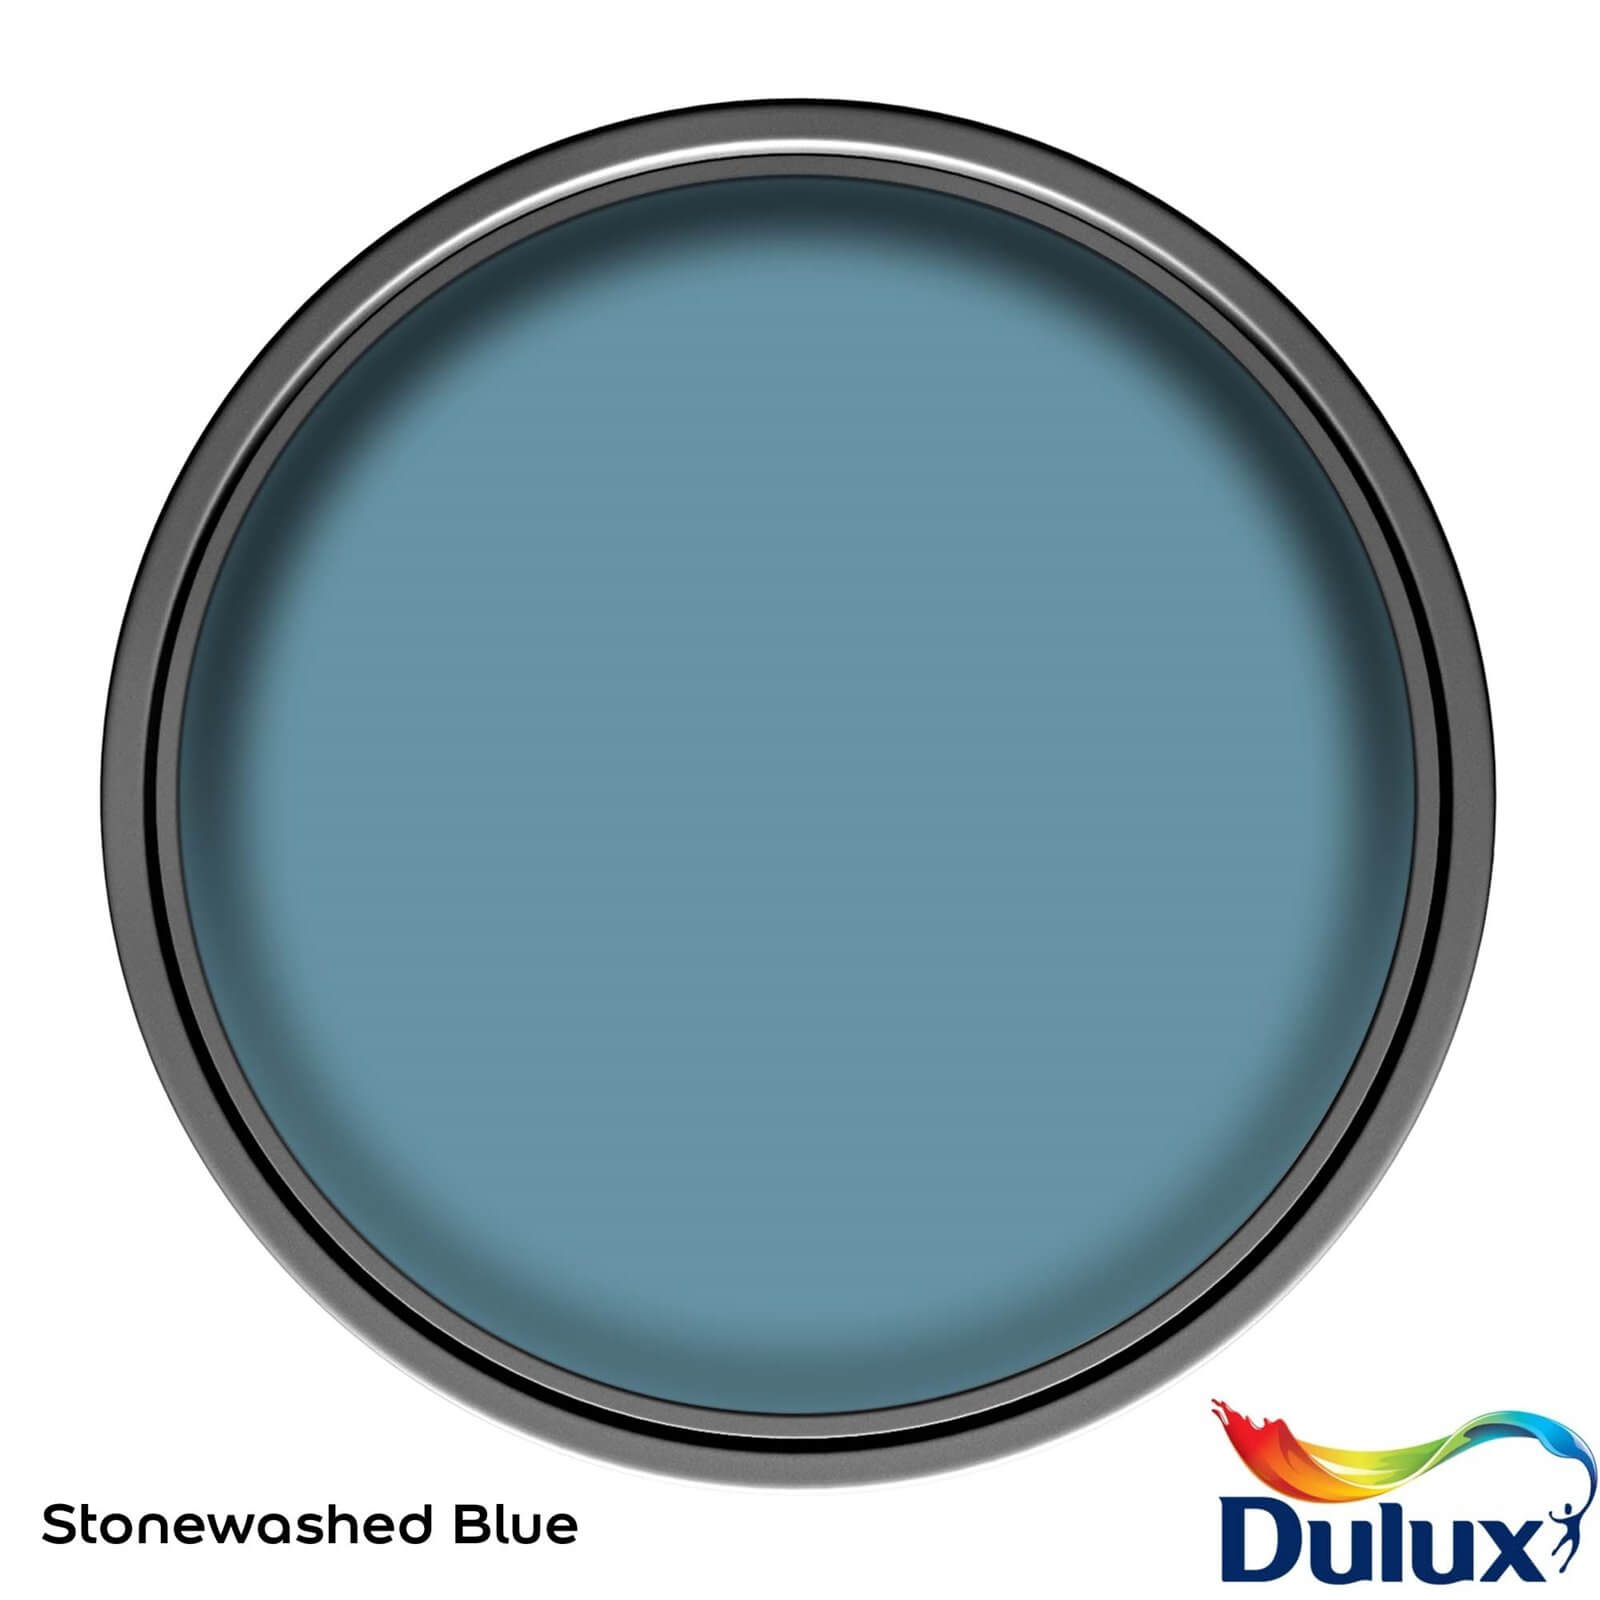 Dulux Easycare Kitchen Stonewashed Blue Matt Paint - 2.5L